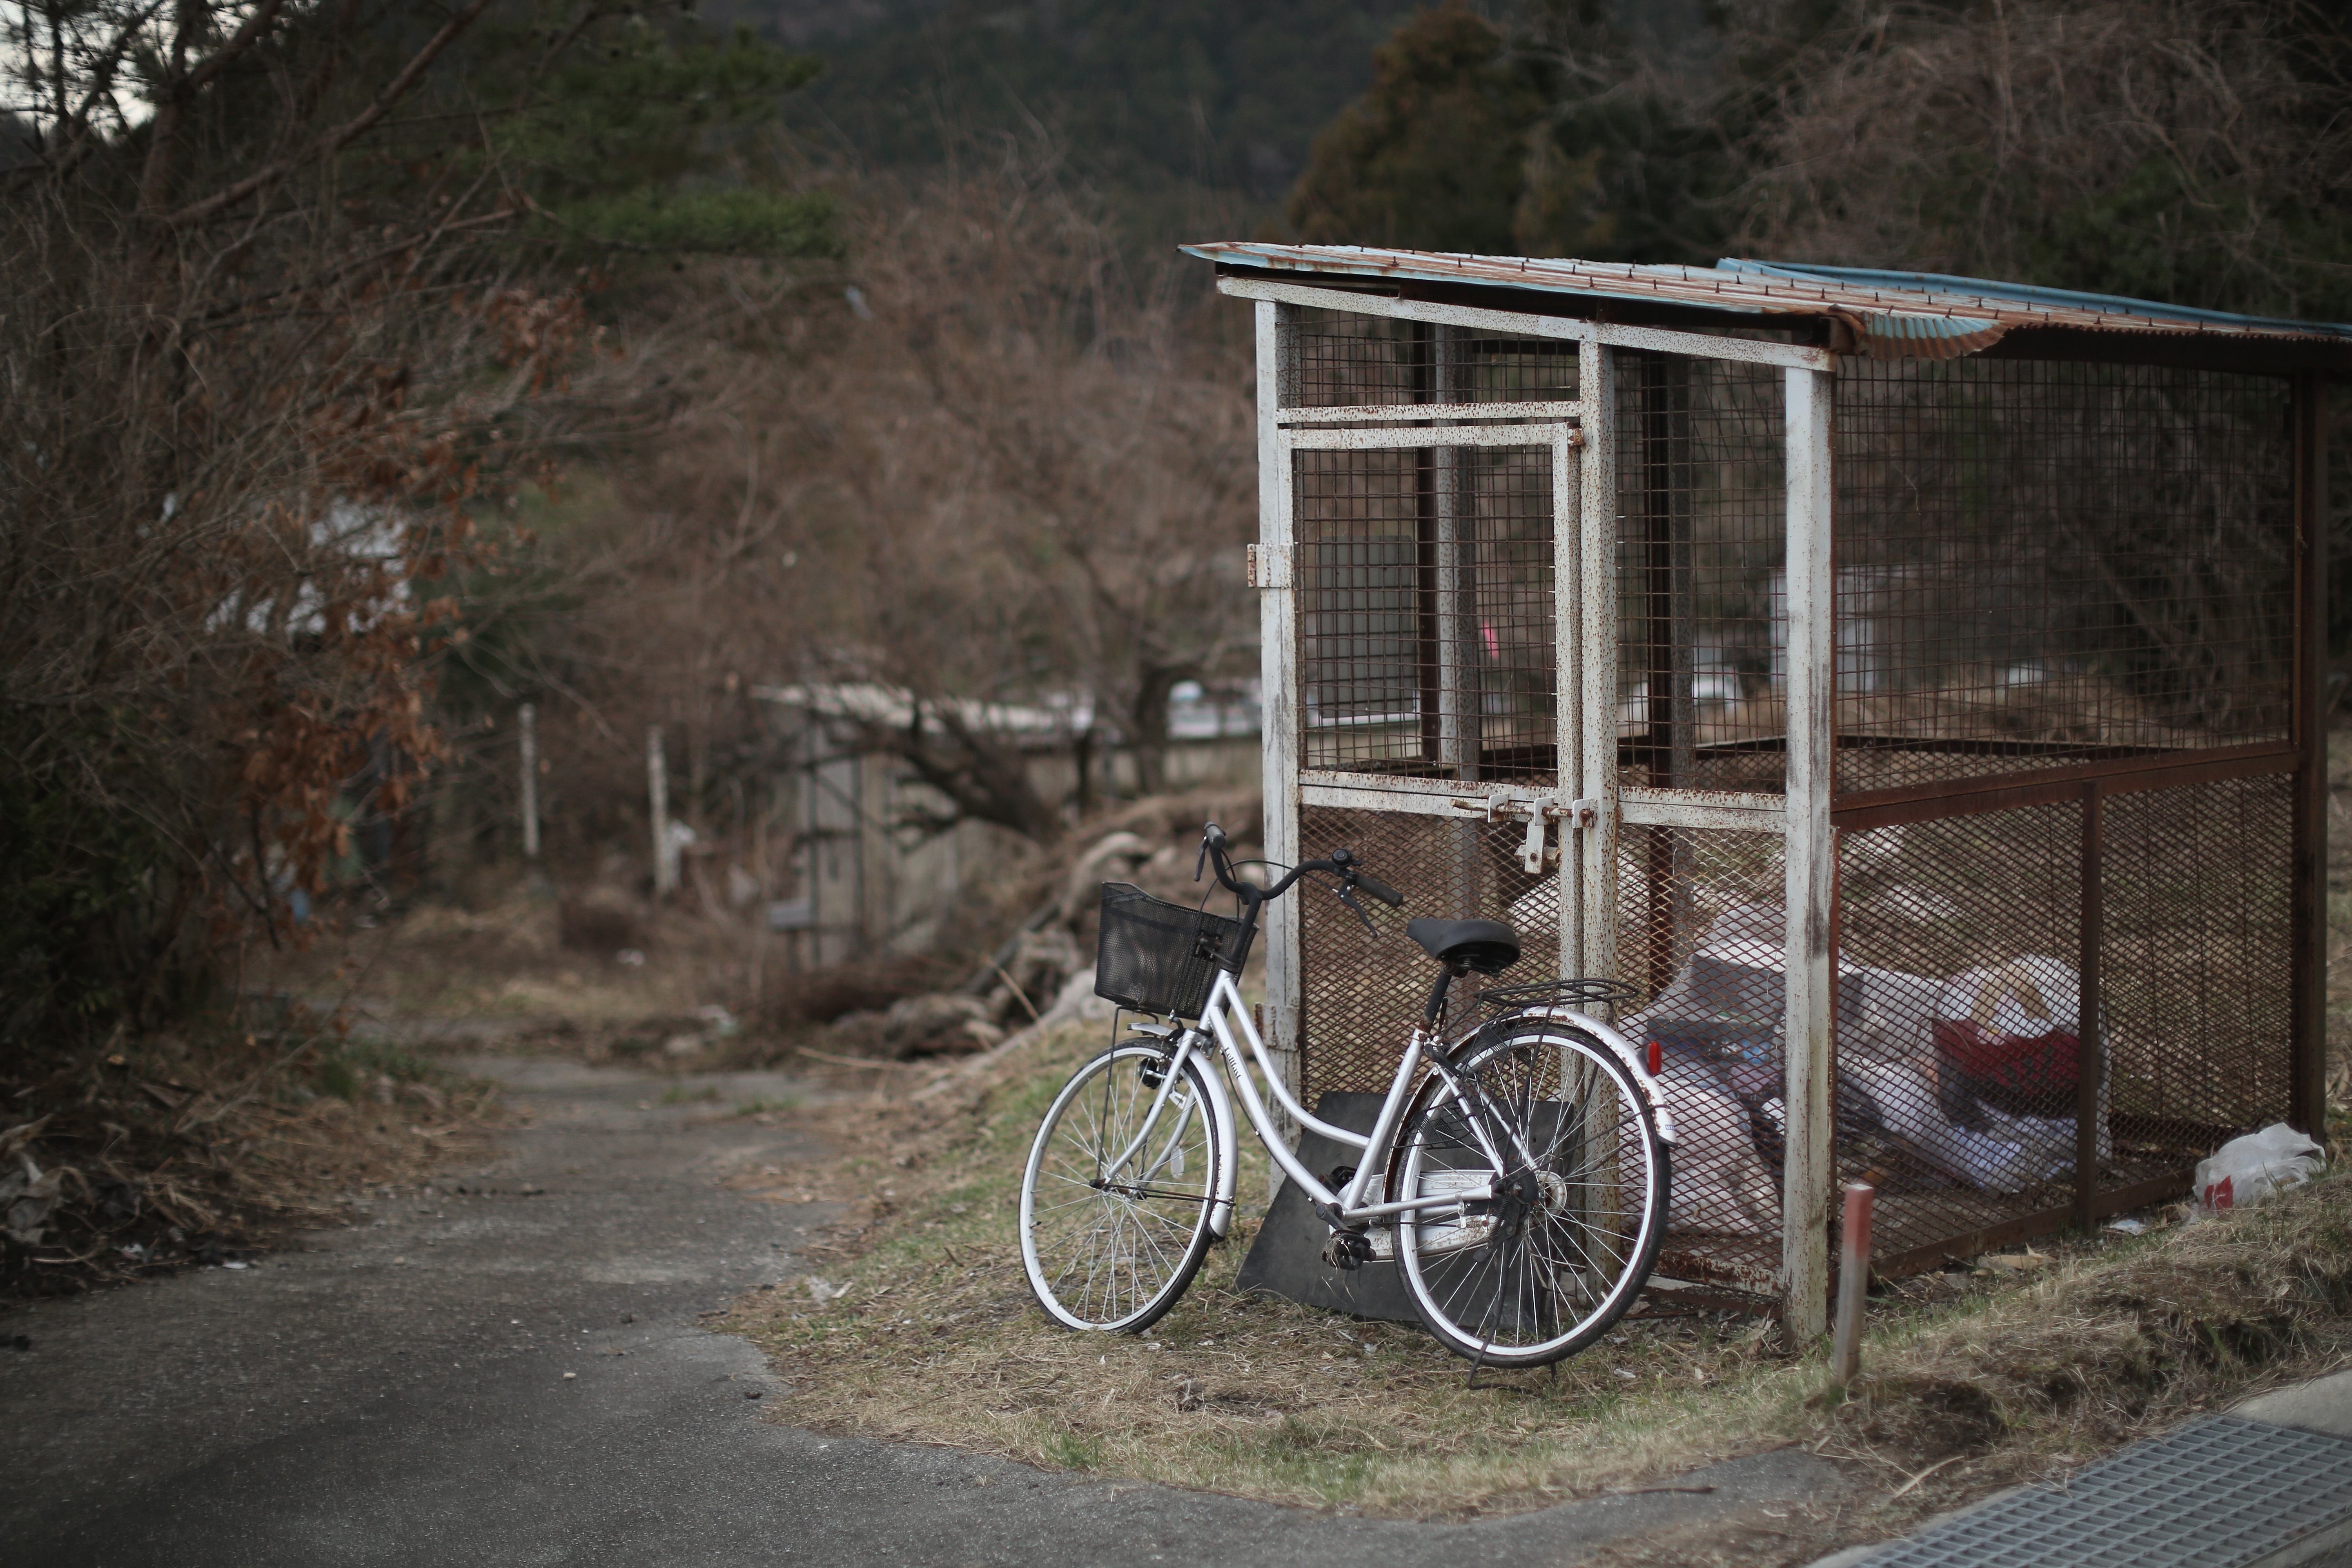 Gрадската зона край японската ядрена централа изглежда като извадена от апокалиптичен филм – недокосната и необитаема